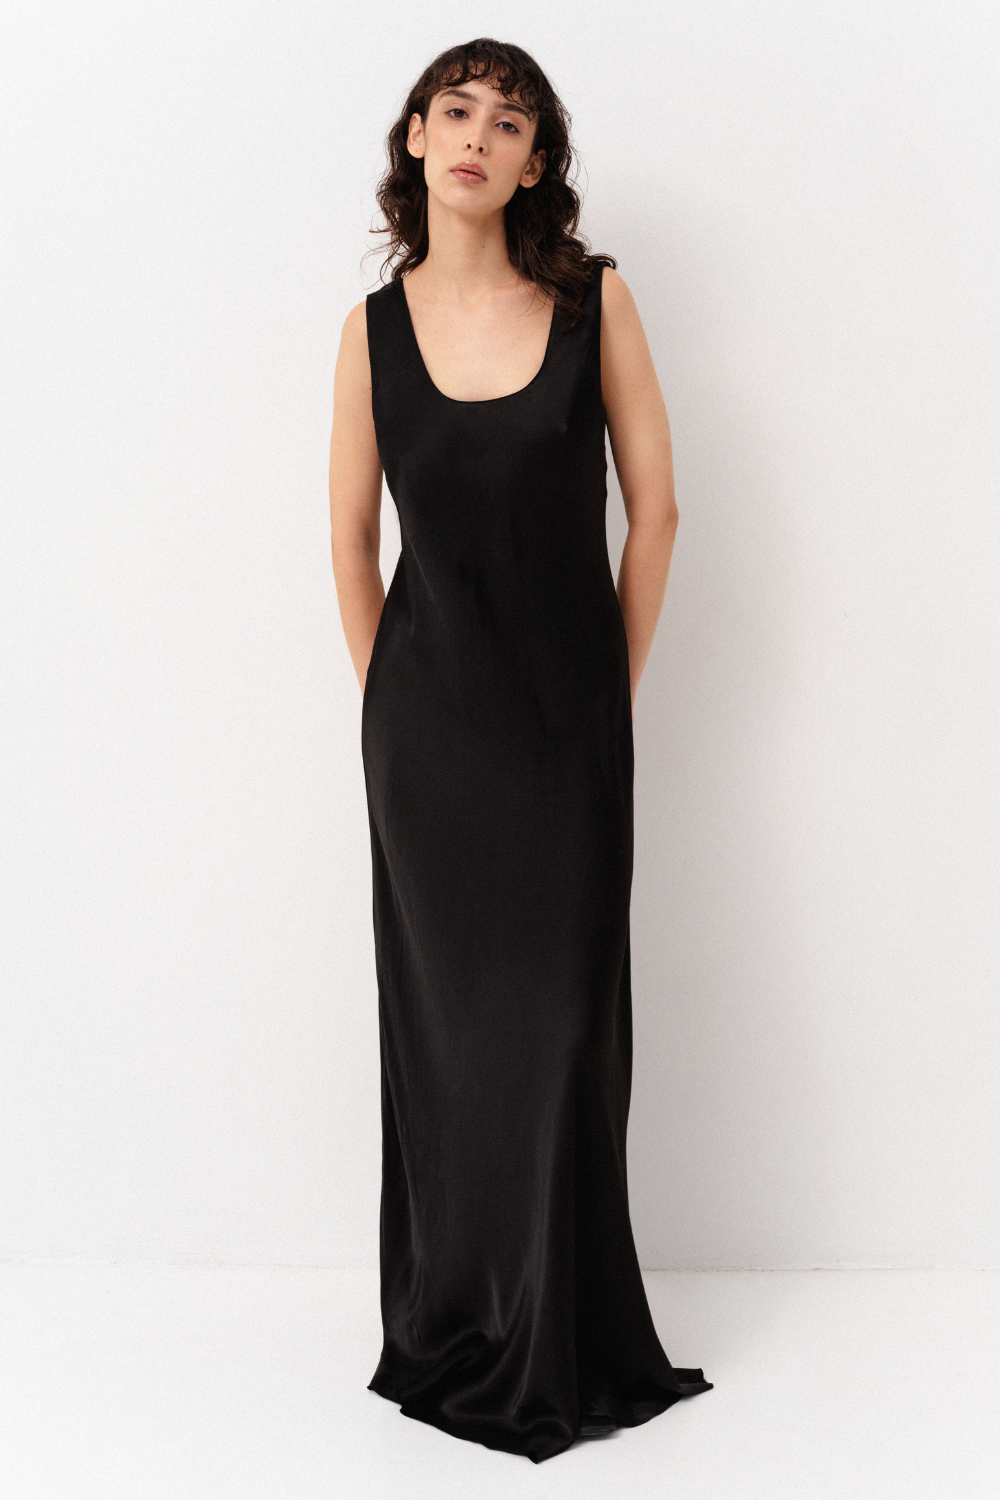 Slip dress, black, SM, (Corsis), 21-003